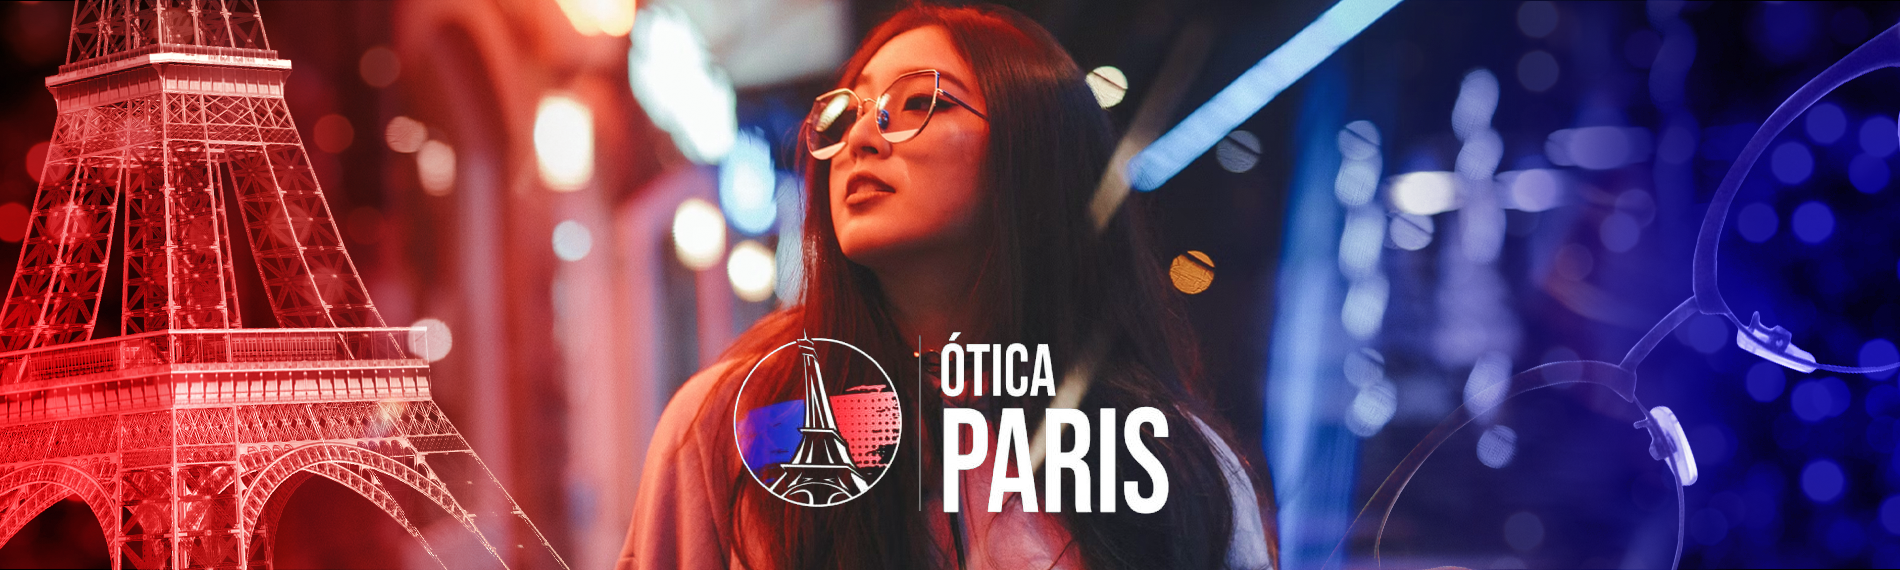 banner da empresa Ótica Paris Cidade Satélite